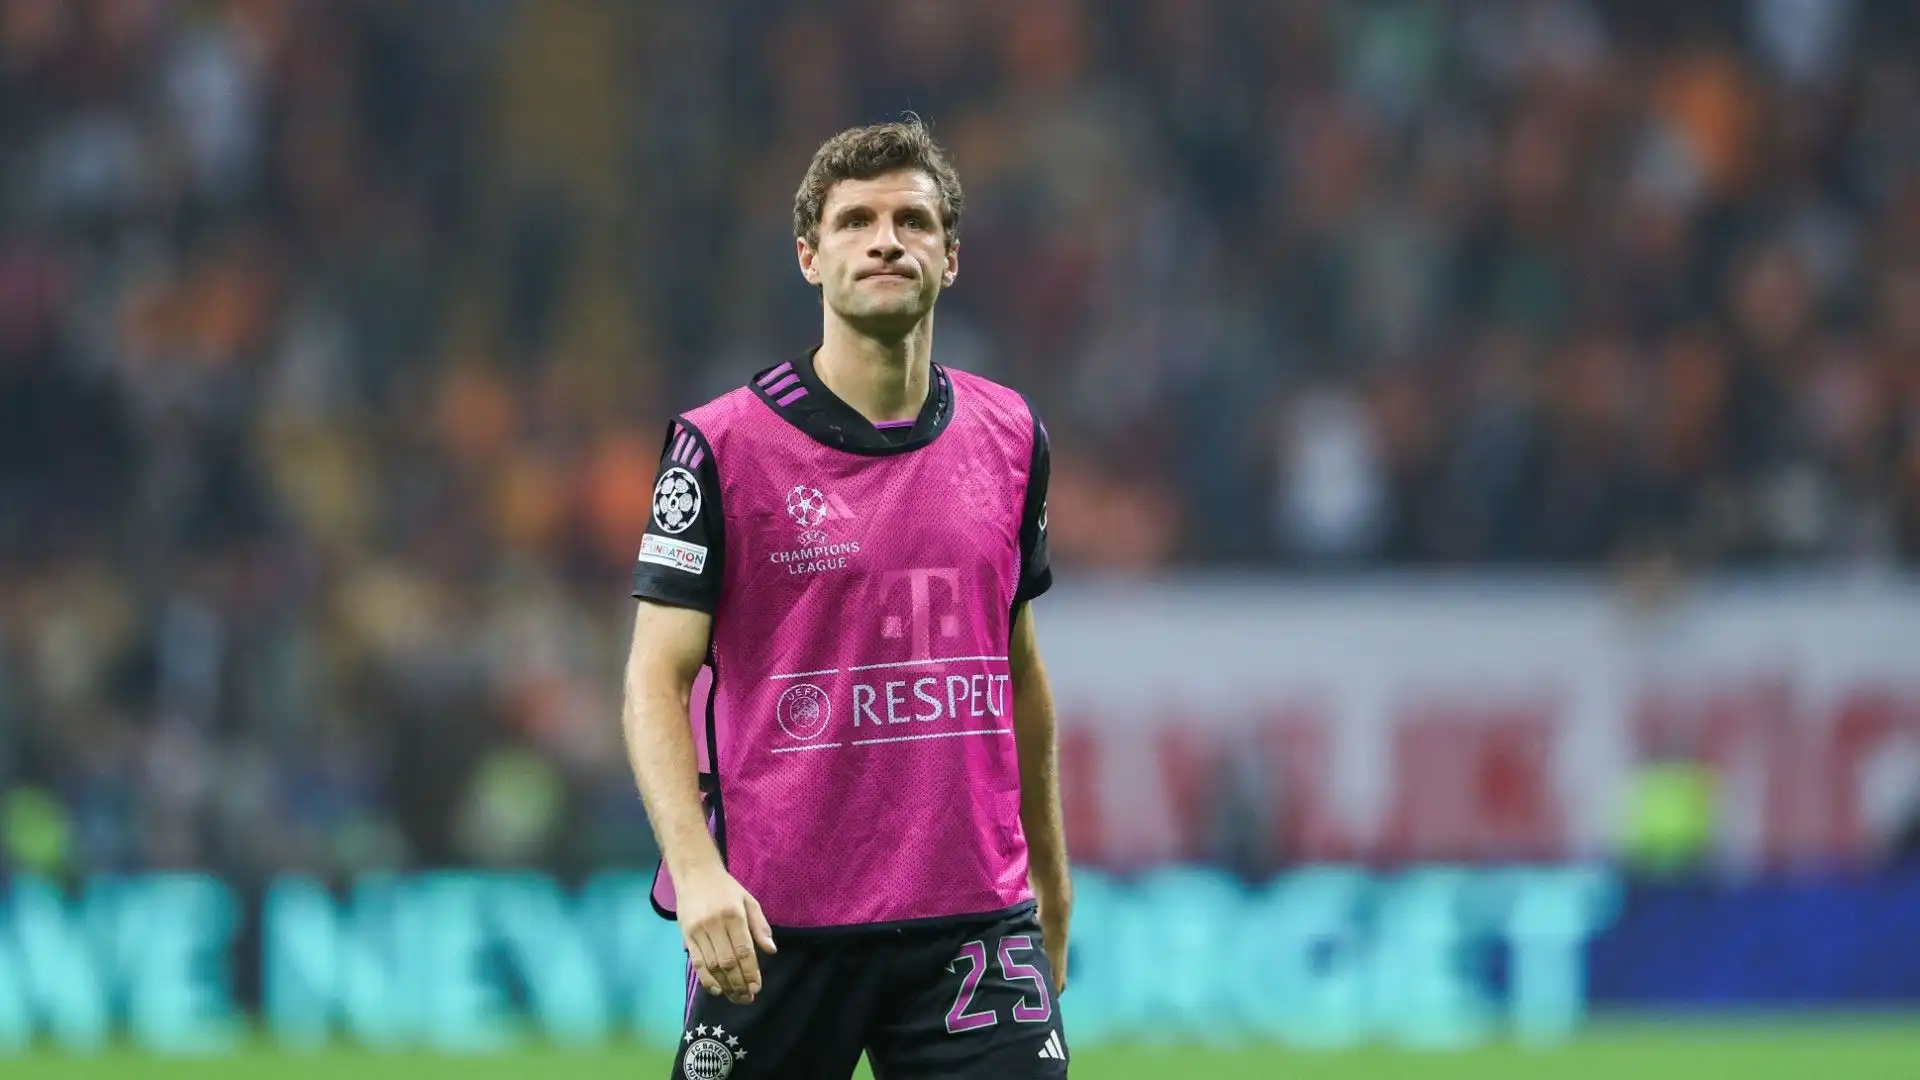 Molti tifosi del club vorrebbero che Müller rimanesse in Baviera